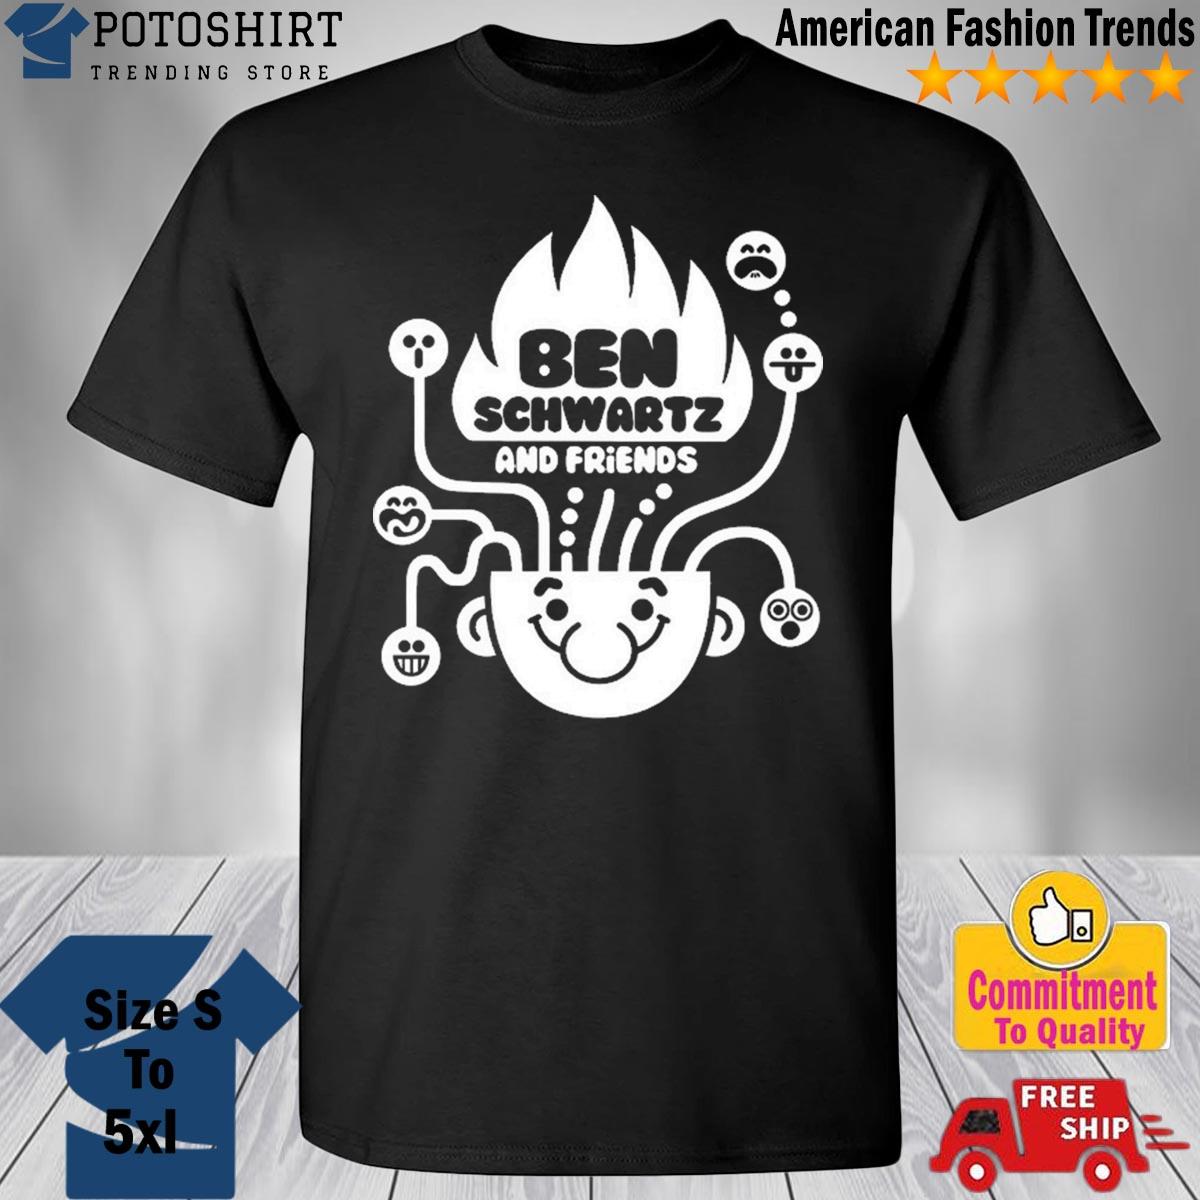 Ben Schwartz & Friends Shirt